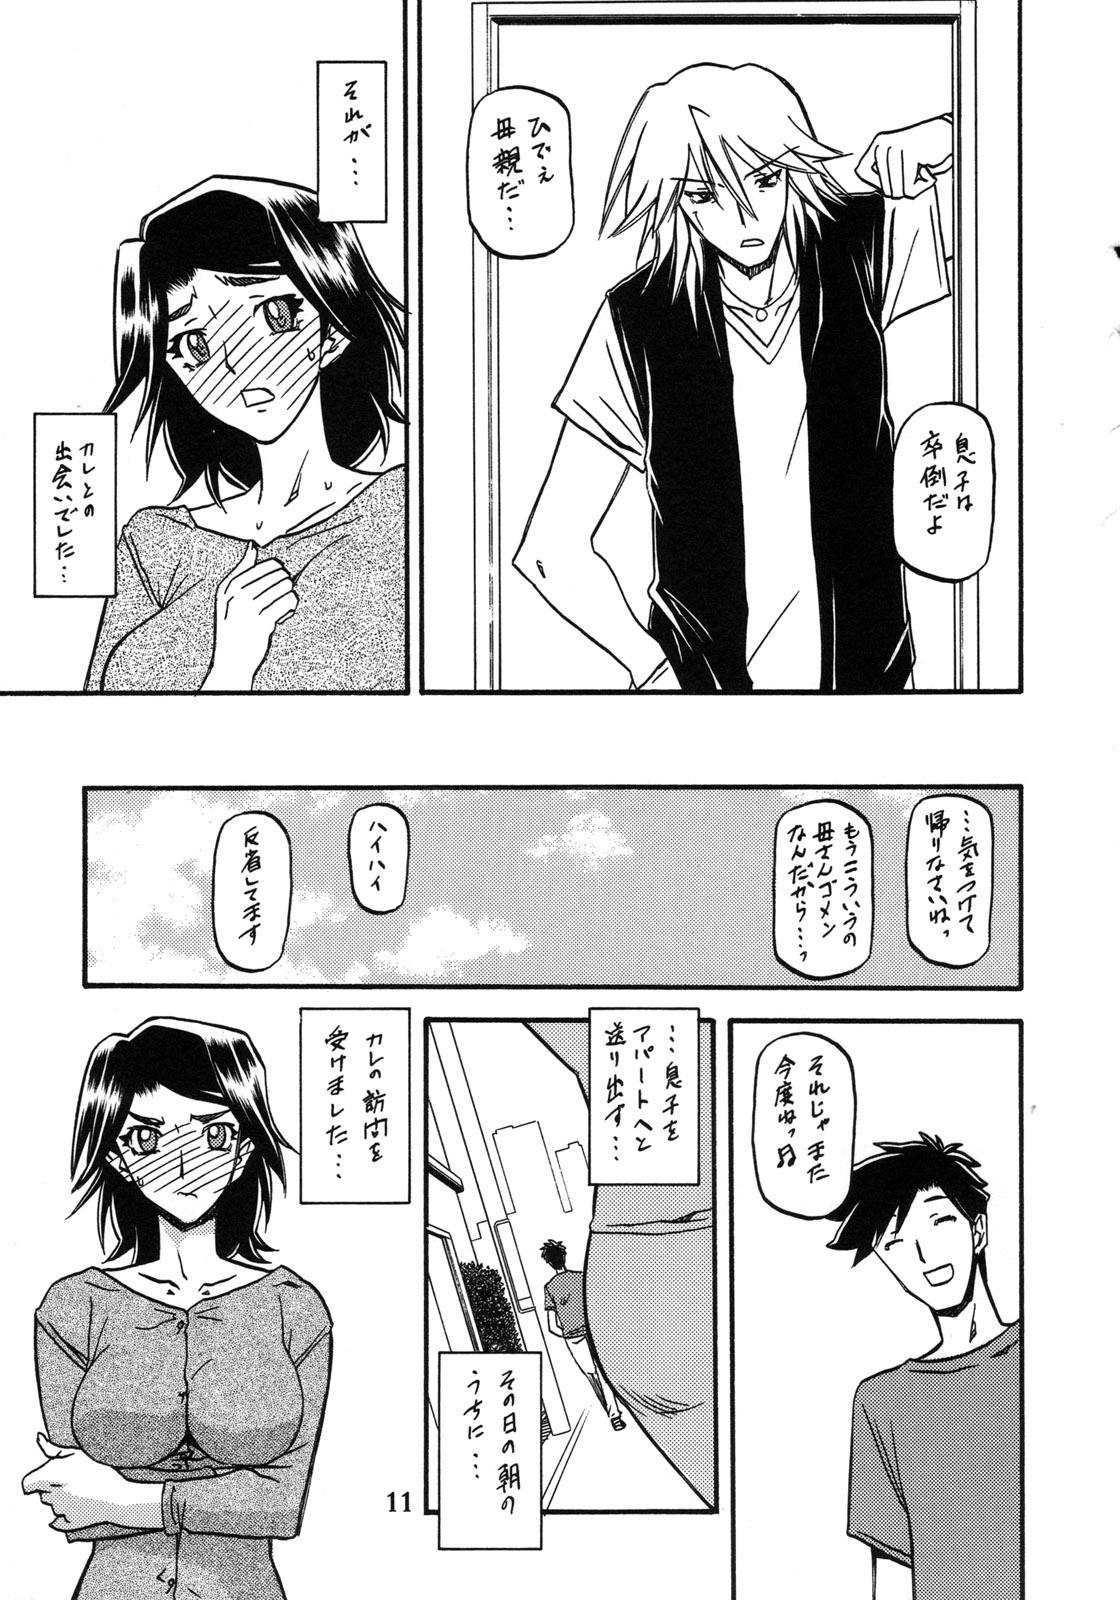 Rola Akebi no Mi - Miwako Katei - Akebi no mi Internal - Page 11